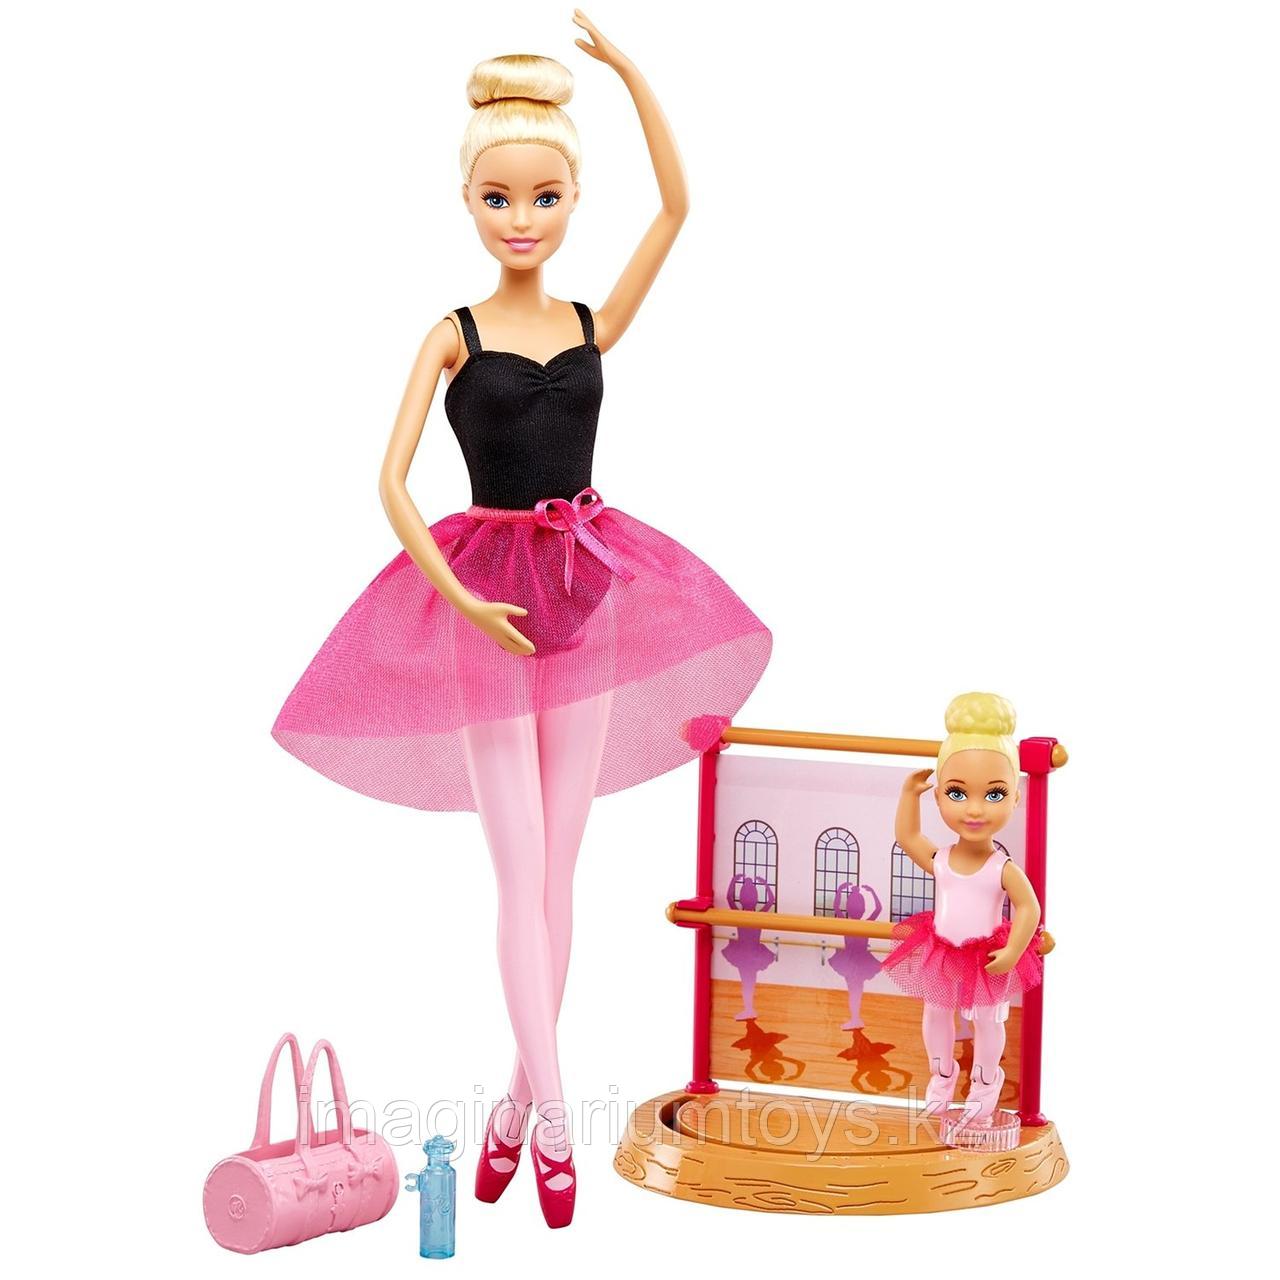 Кукла Barbie Инструктор балета, фото 1